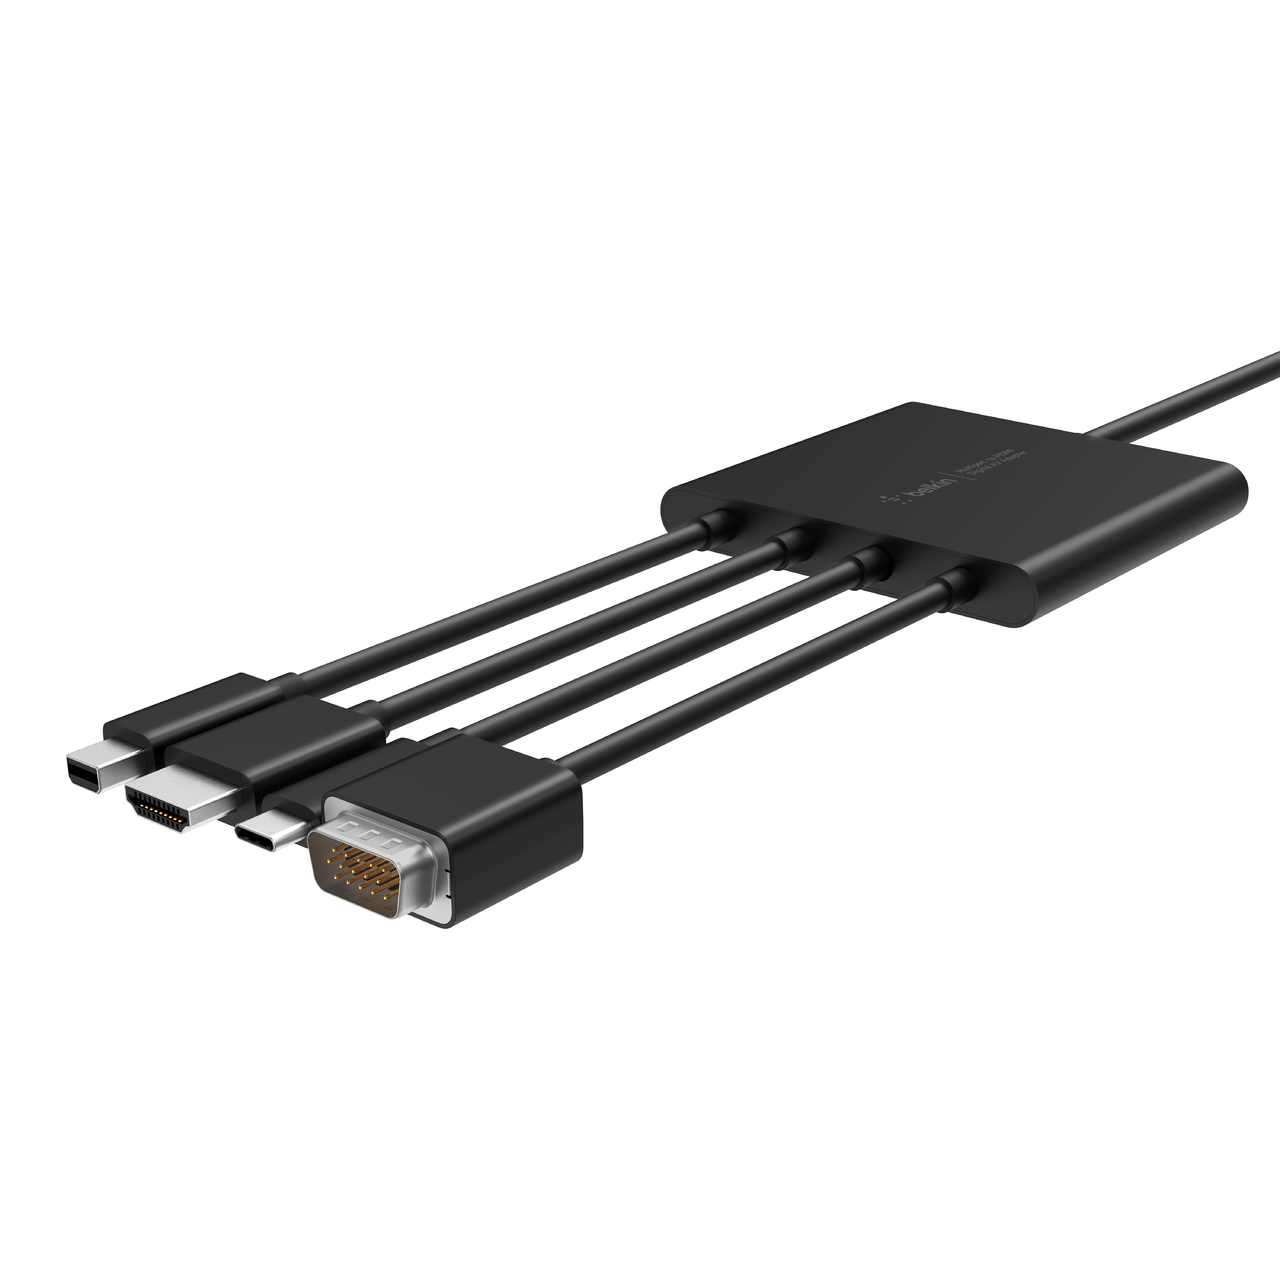 Buy Apple USB-C Digital AV Multiport Adapter at Compu b